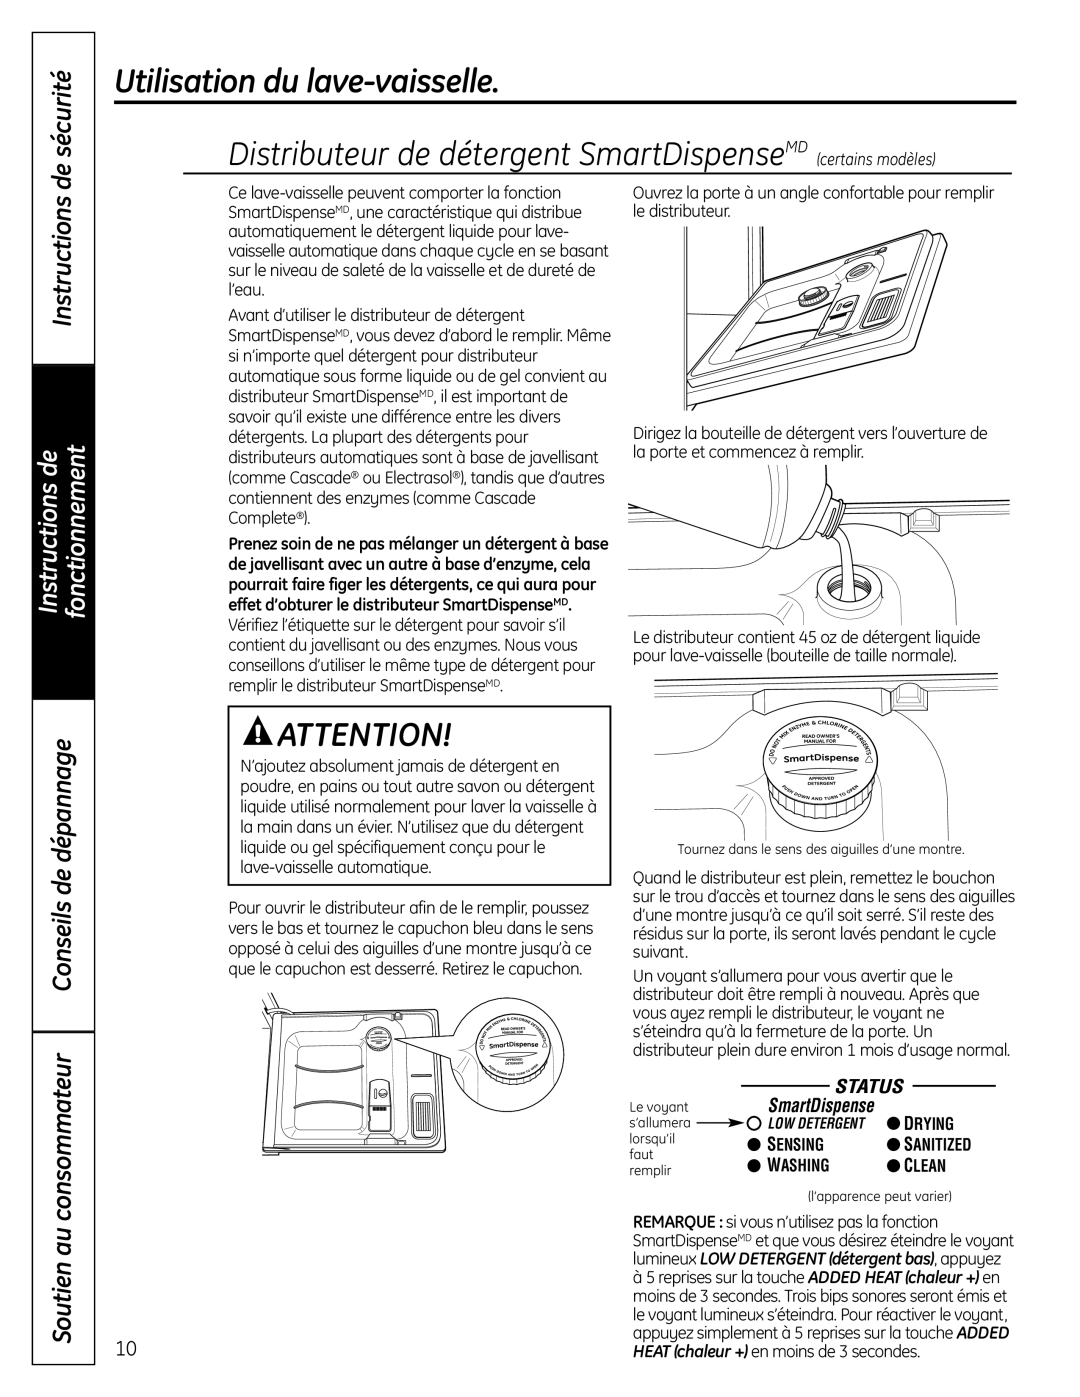 GE PDW8000 Distributeur de détergent SmartDispenseMD certains modèles, Instructions, Utilisation du lave-vaisselle, Drying 